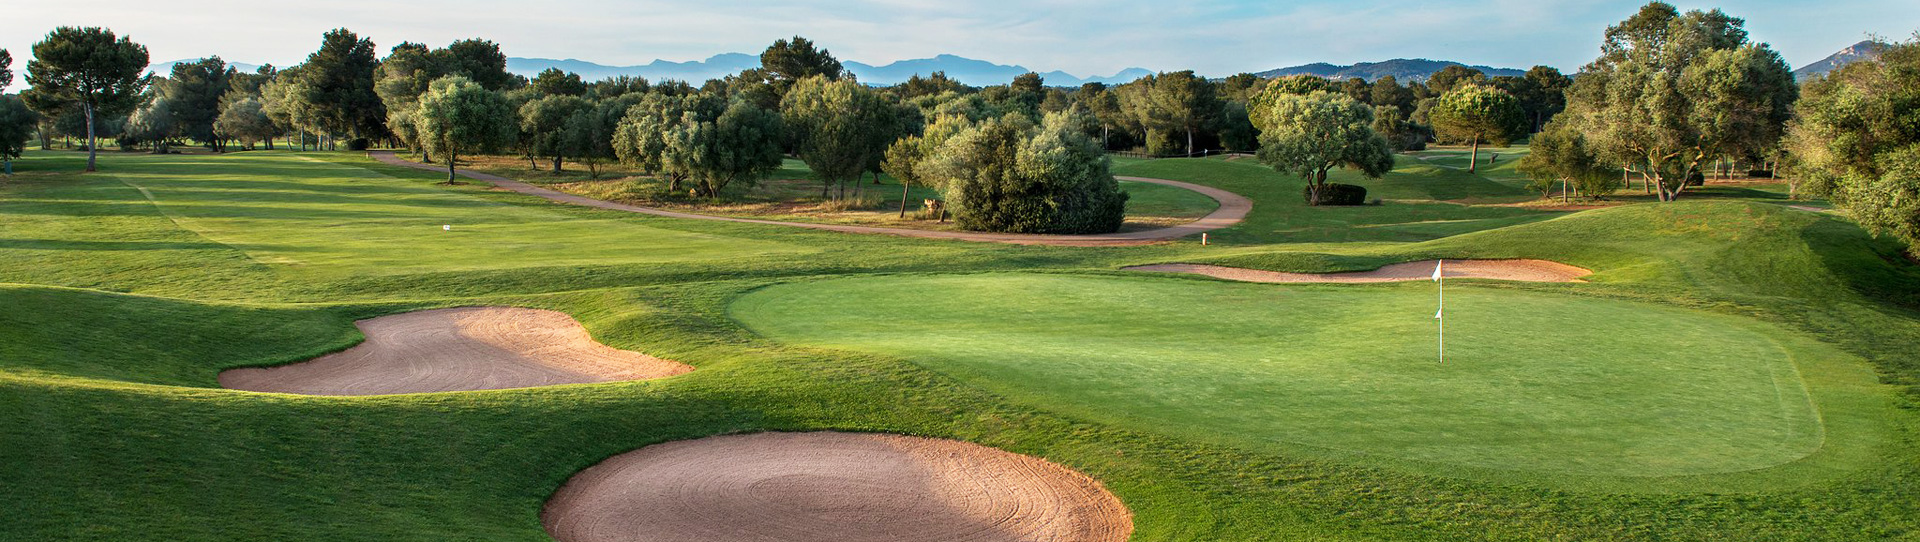 Spain golf courses - Son Antem Golf Course West - Photo 2